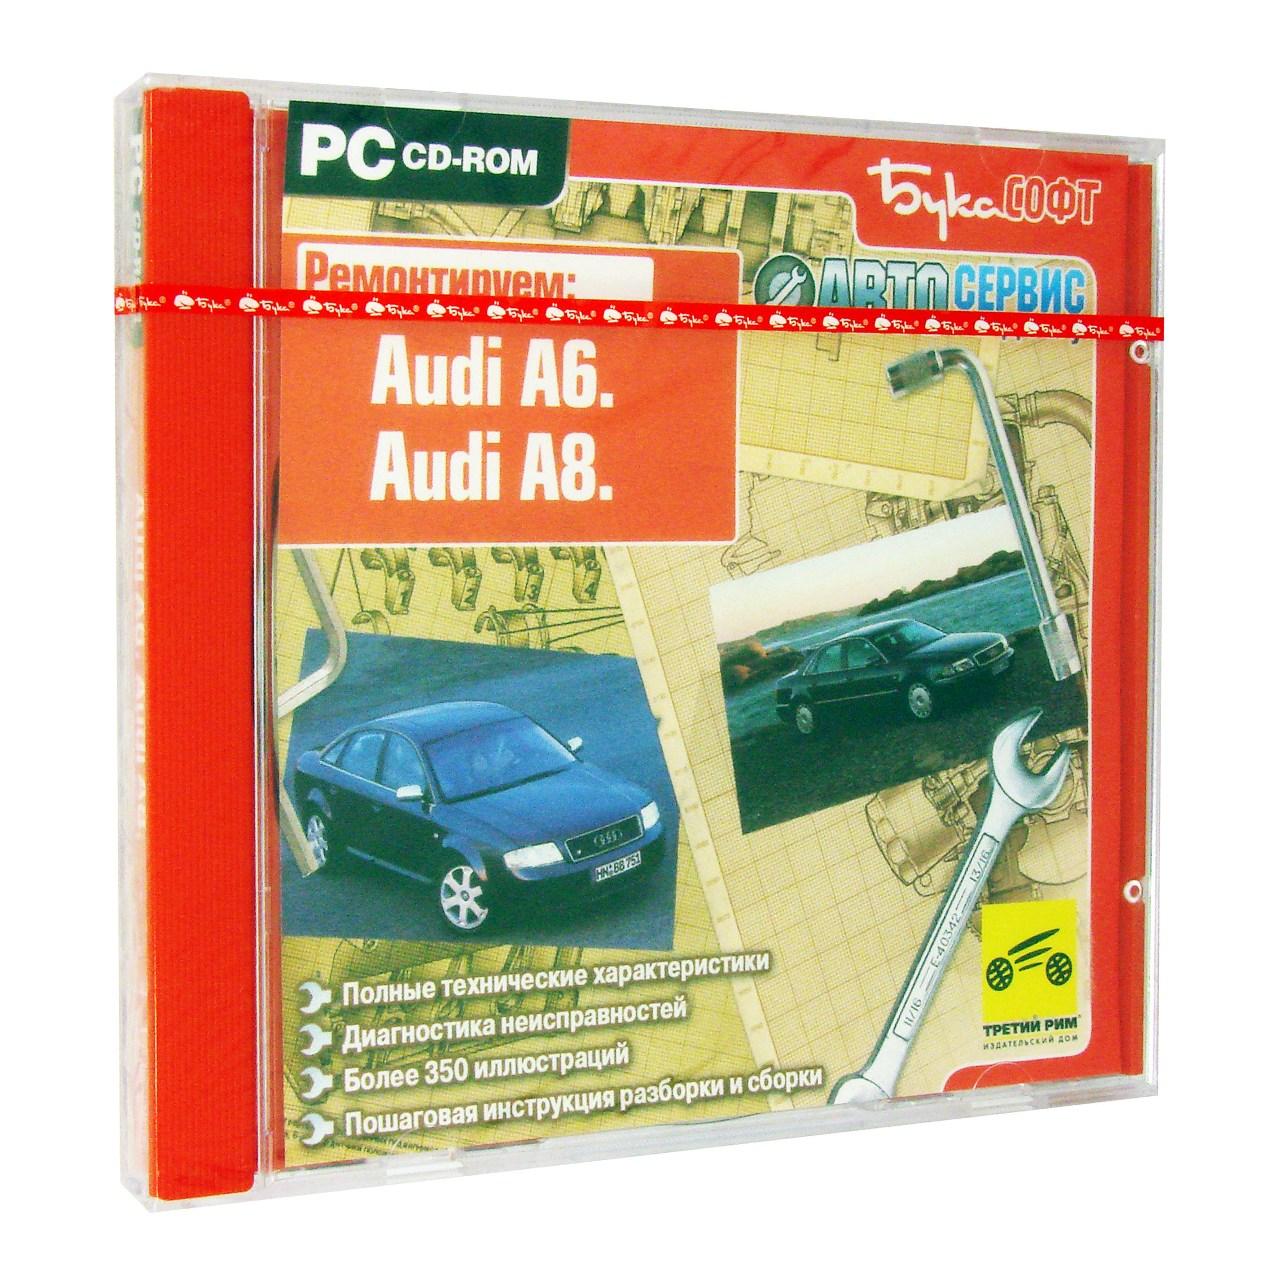 Компьютерный компакт-диск Audi A6. Audi A8. Автосервис на дому. (ПК), фирма "Бука", 1CD